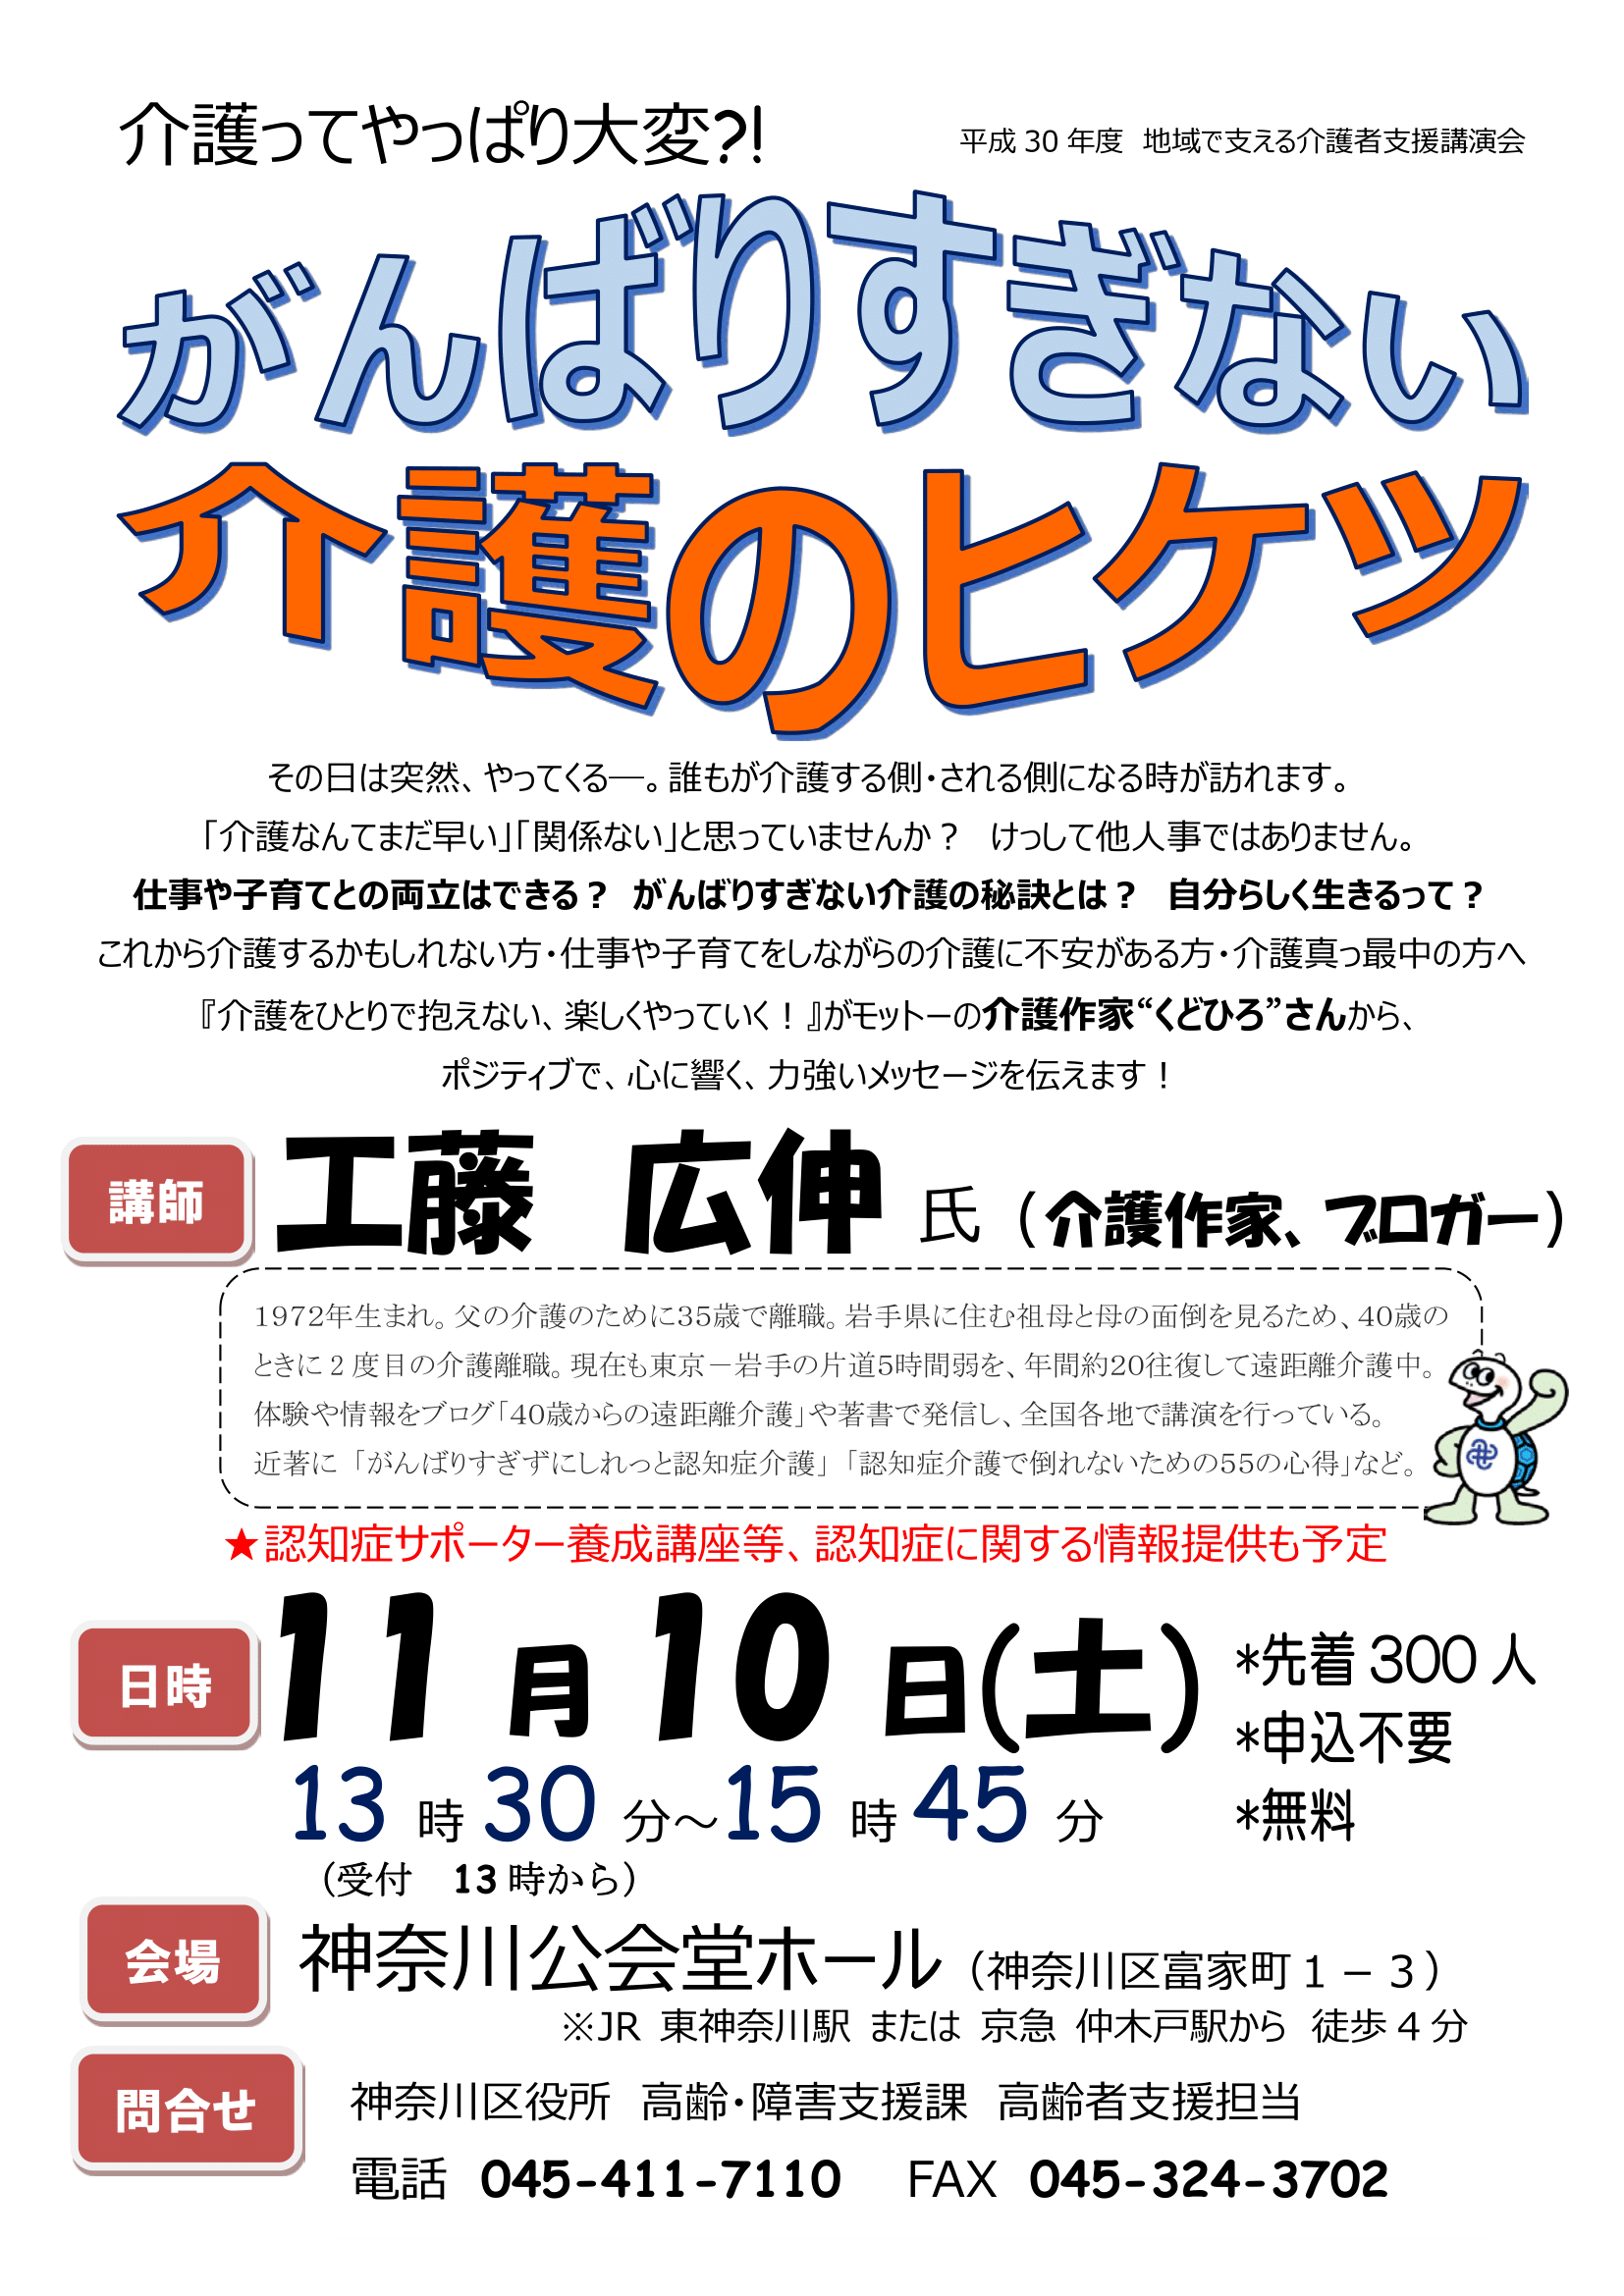 神奈川区介護講演会